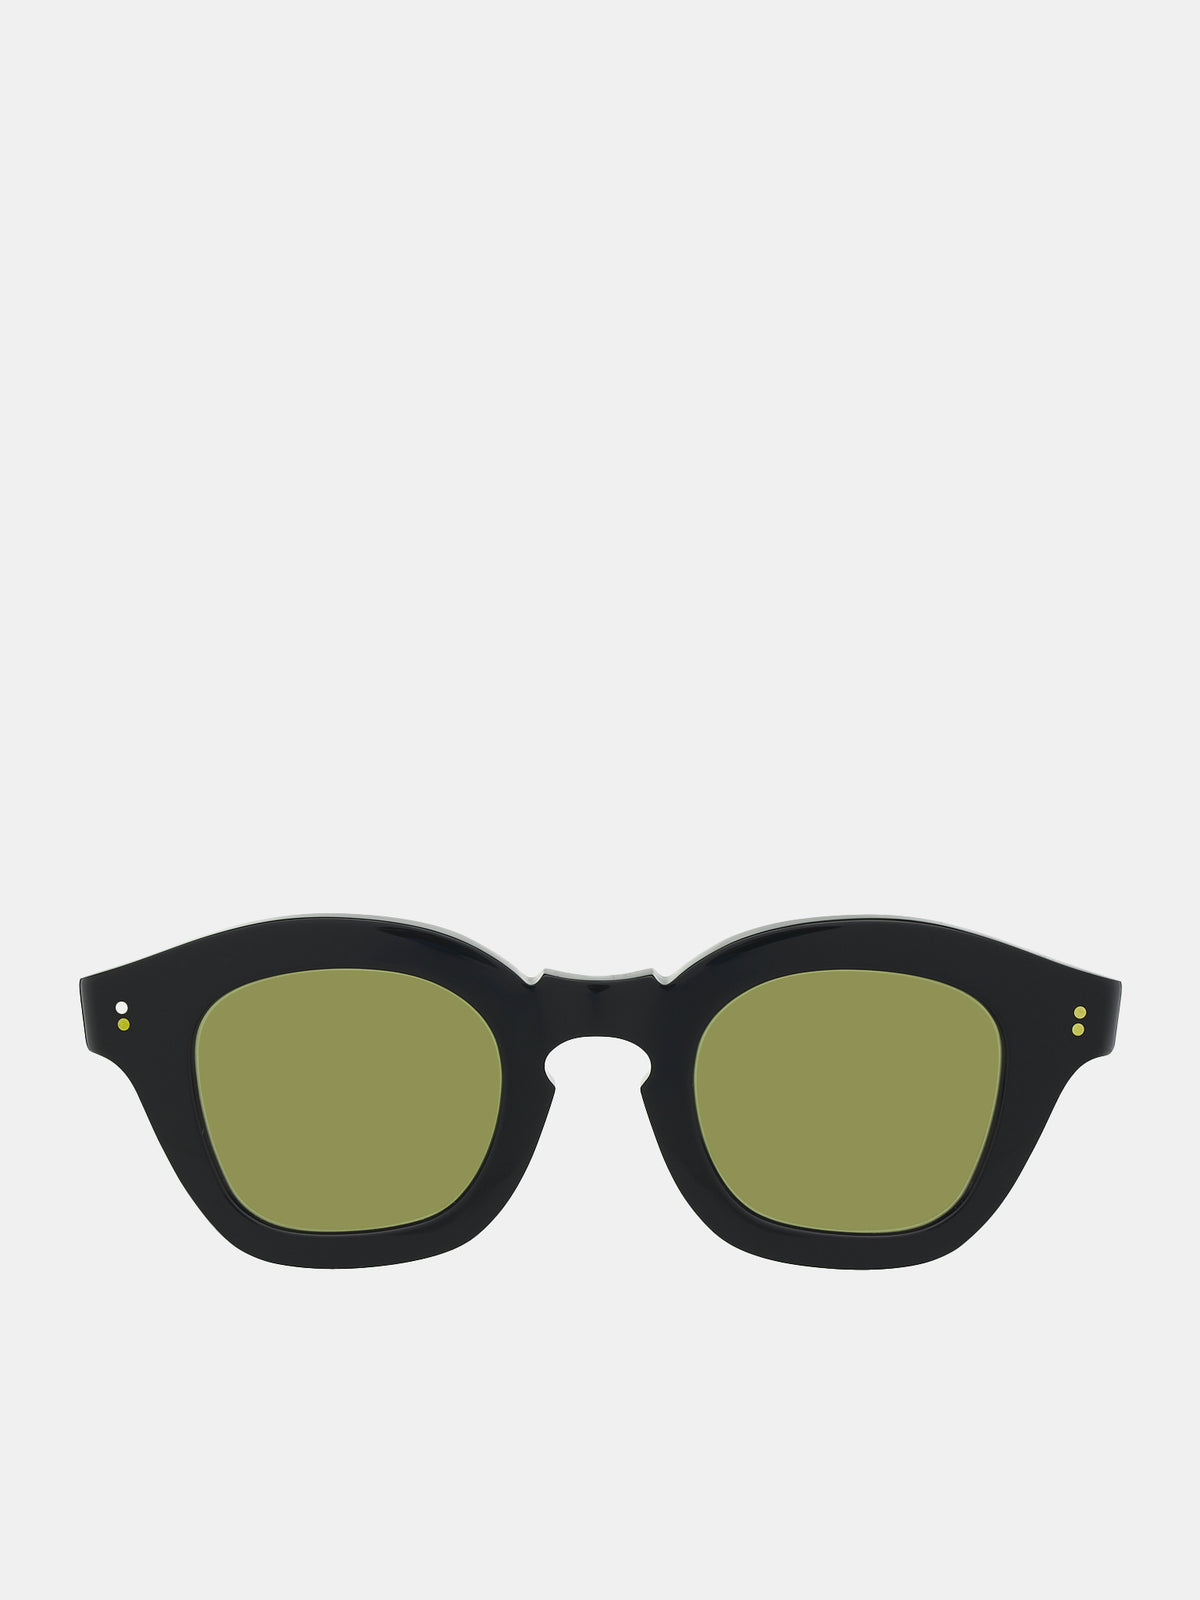 Glam Proto Sunglasses (GLAM-PROTO-BLACK-BROWN4)